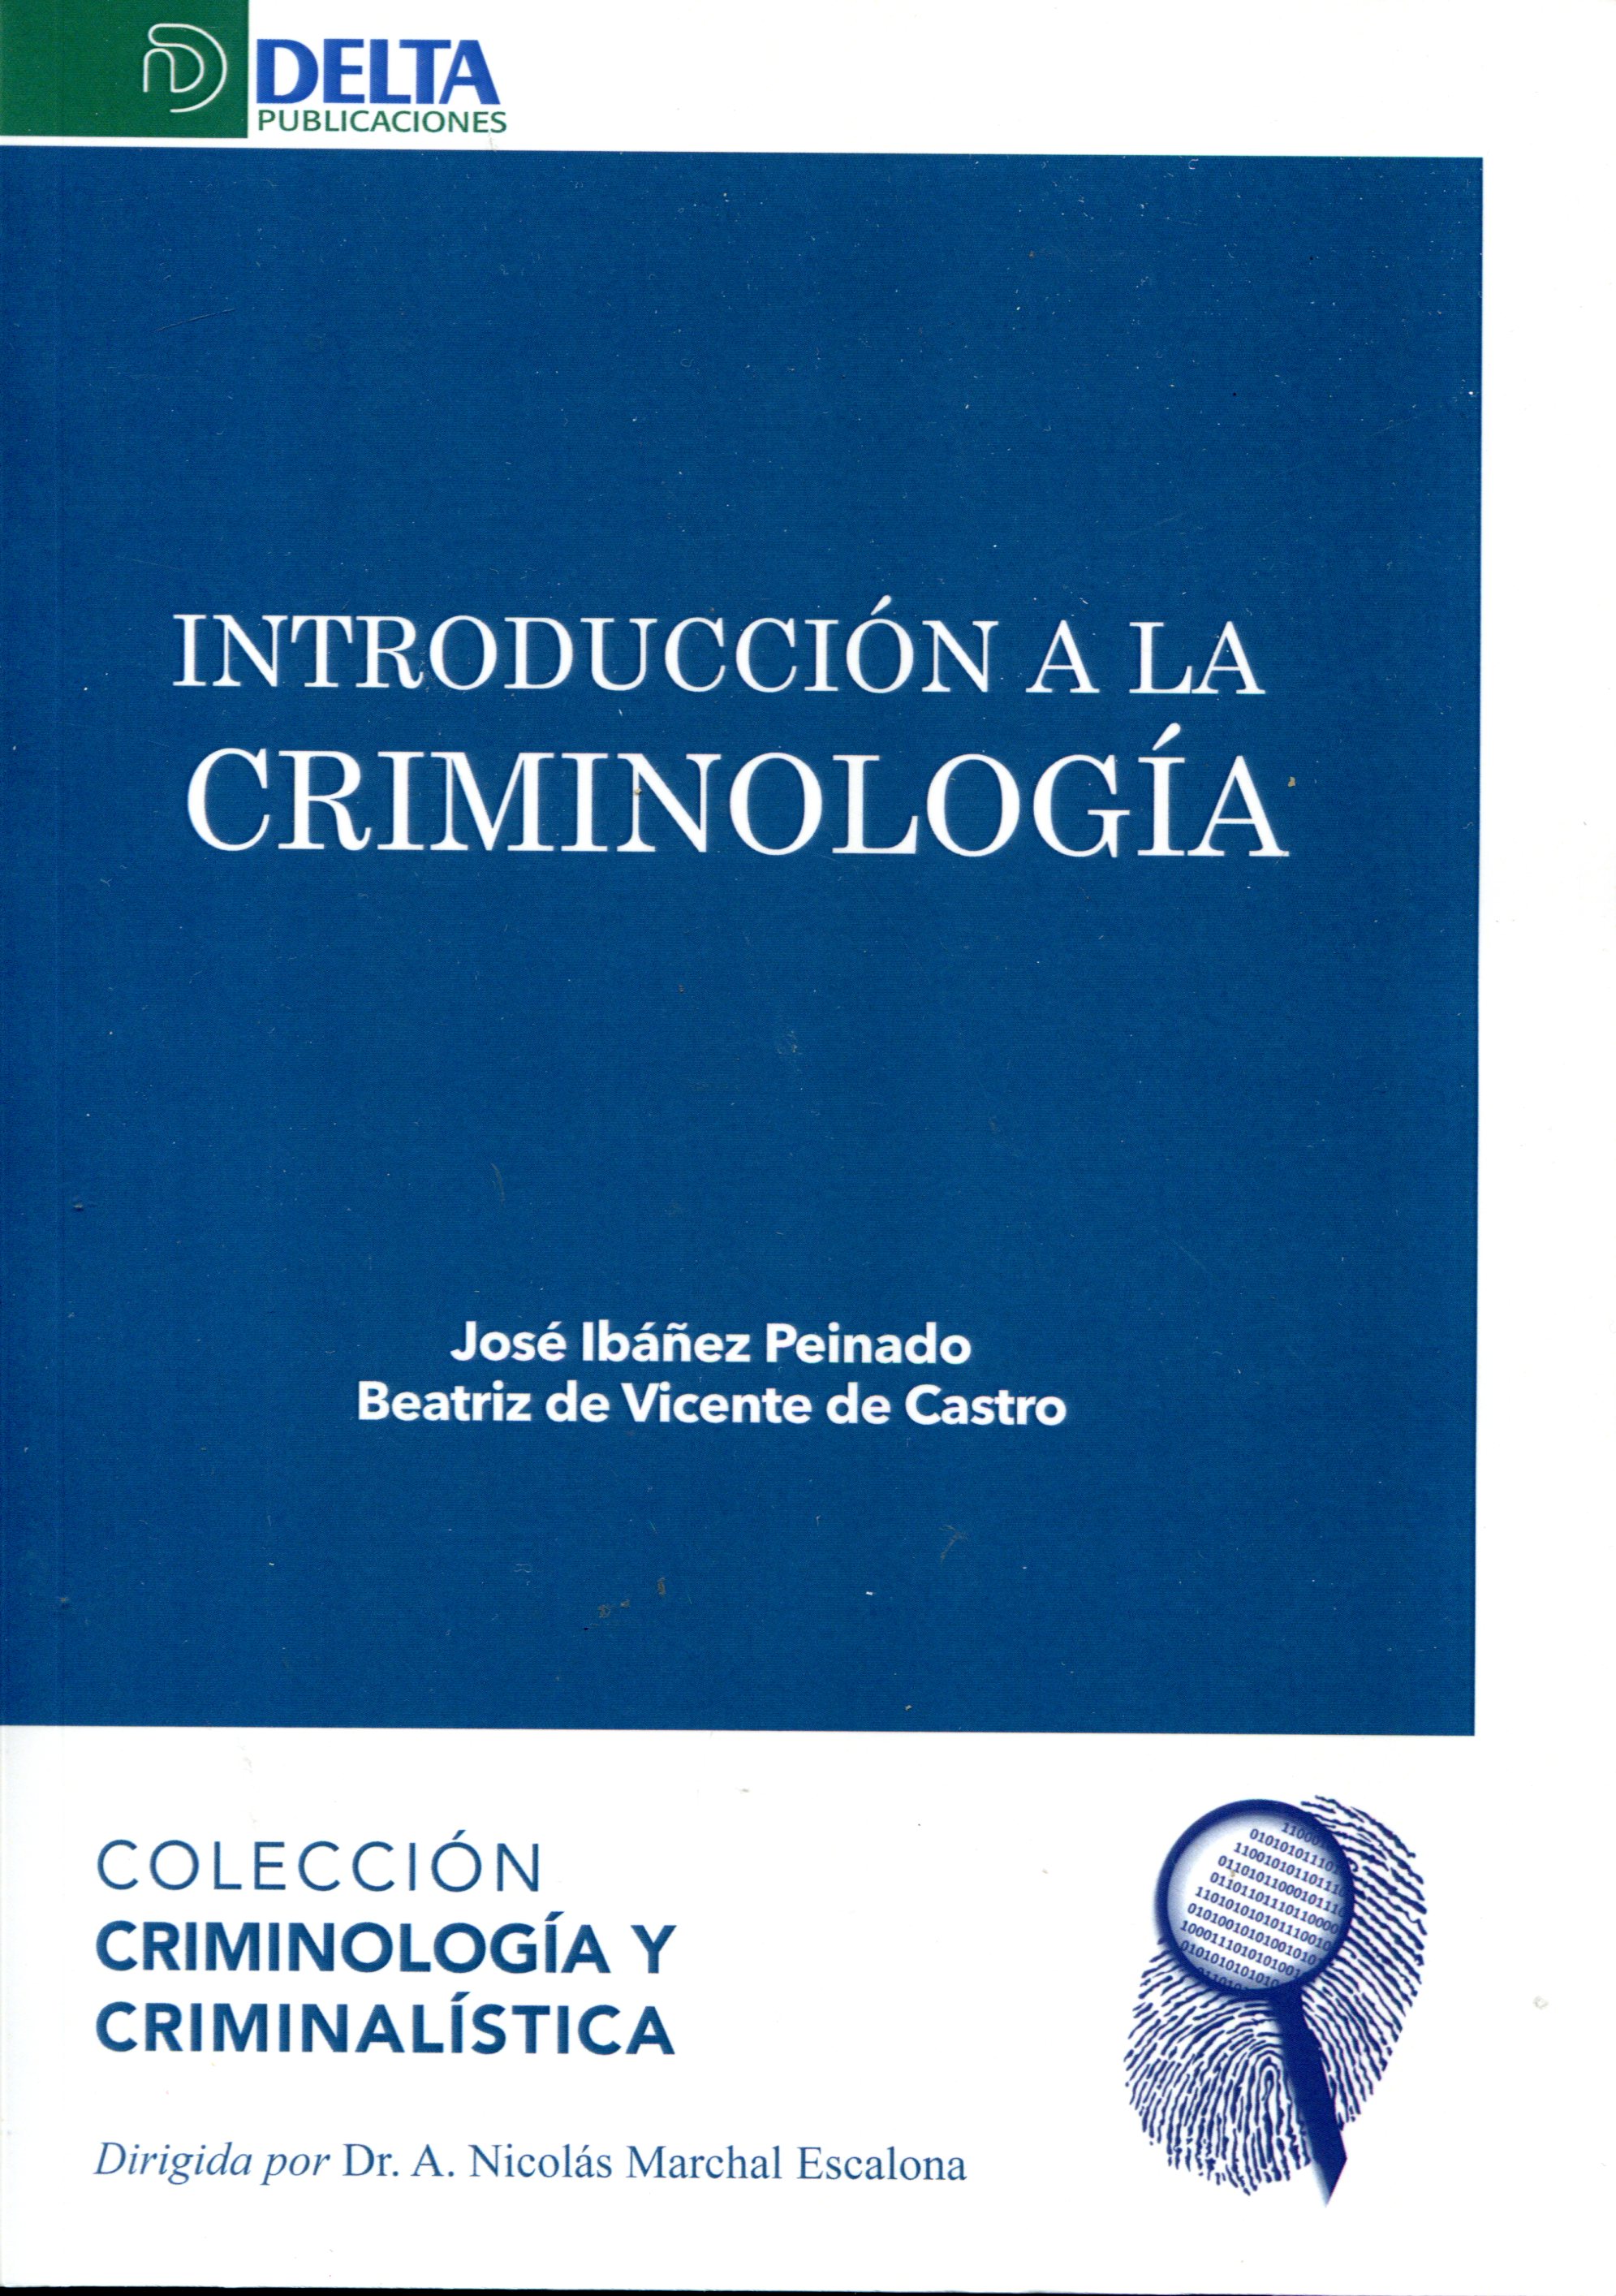 Imagen de portada del libro Introducción a la criminología